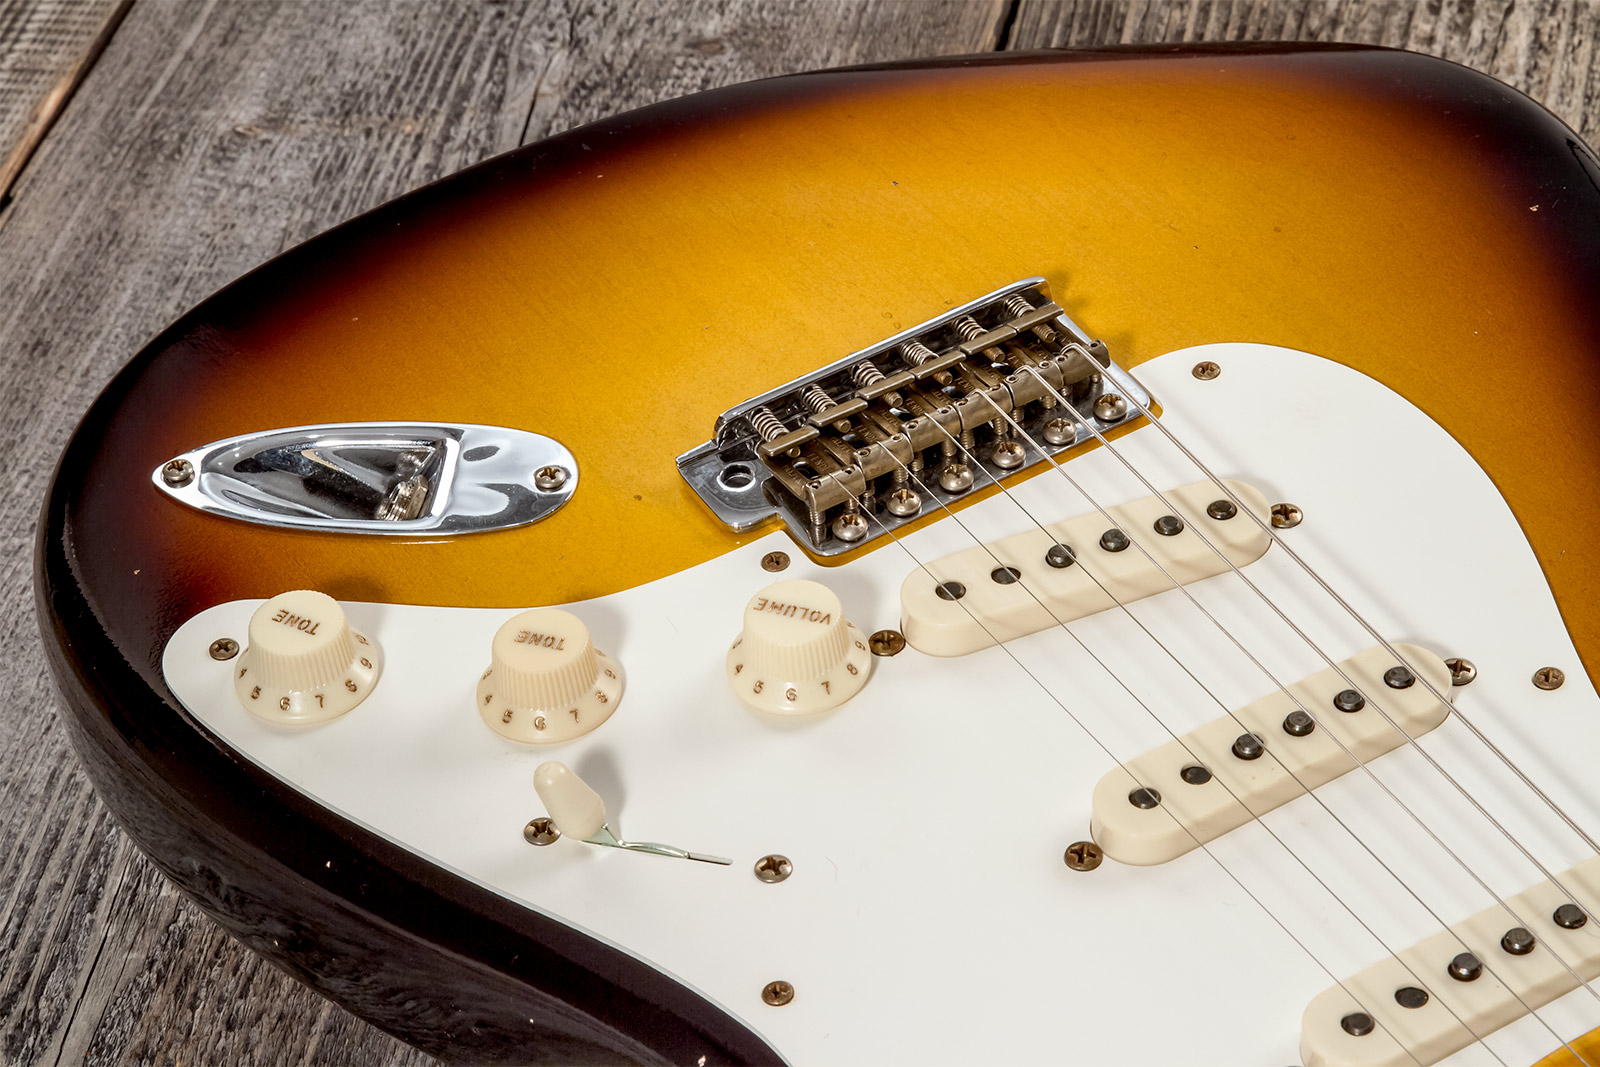 Fender Custom Shop Strat 1956 3s Trem Mn #cz575333 - Journeyman Relic 2-color Sunburst - Str shape electric guitar - Variation 3